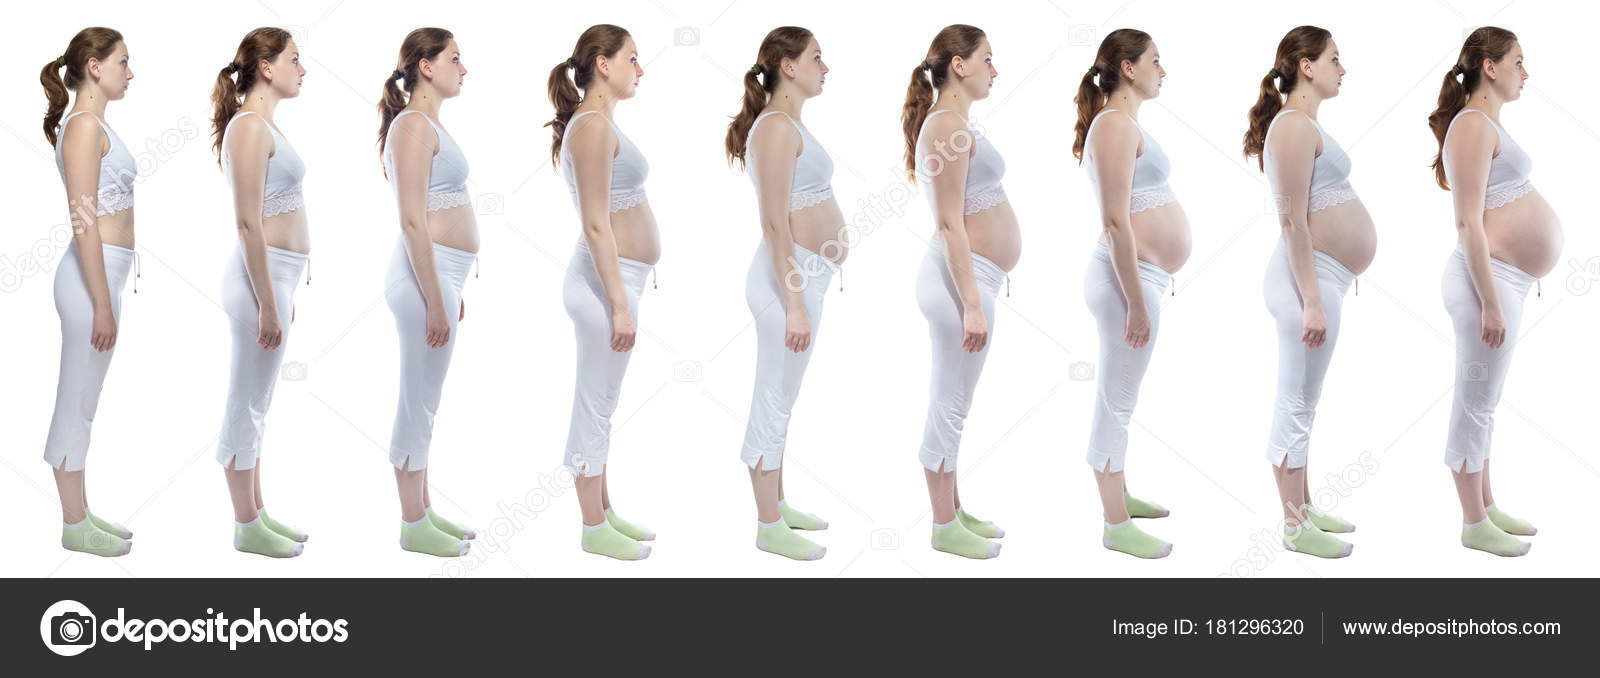 грудь до беременности и грудь во время беременности фото фото 80